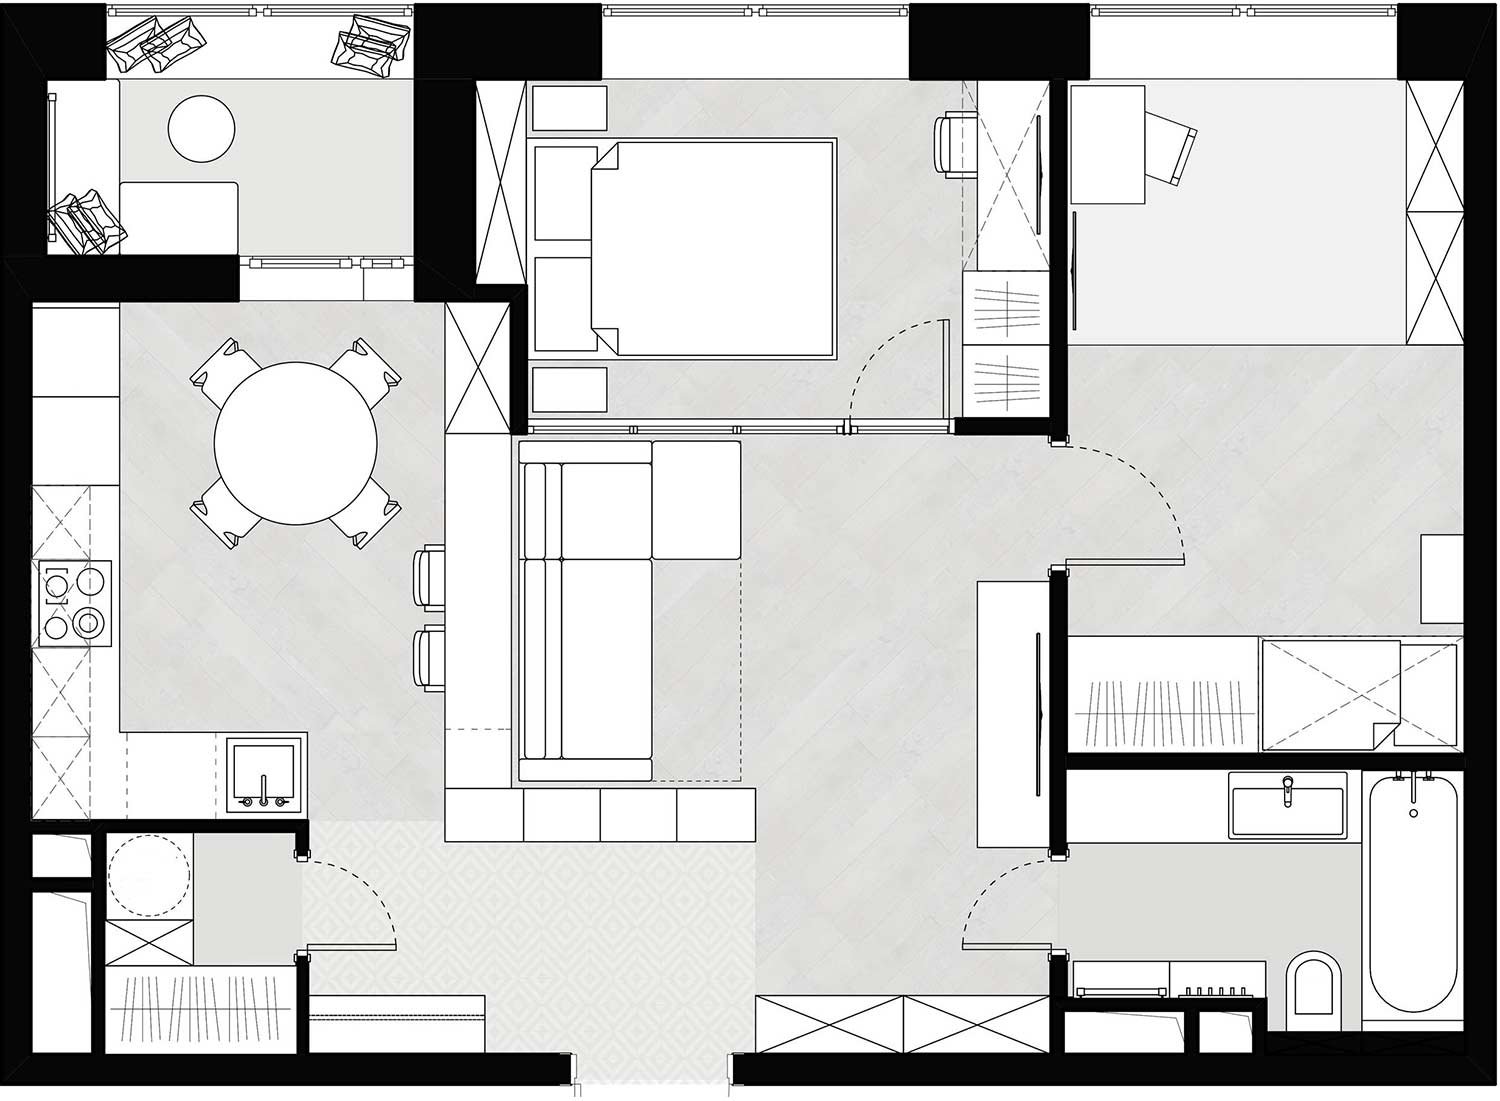 Hogyan alakítottak át kétszobás lakást kényelmes háromszobássá - 58m2-en háromfős fiatal család